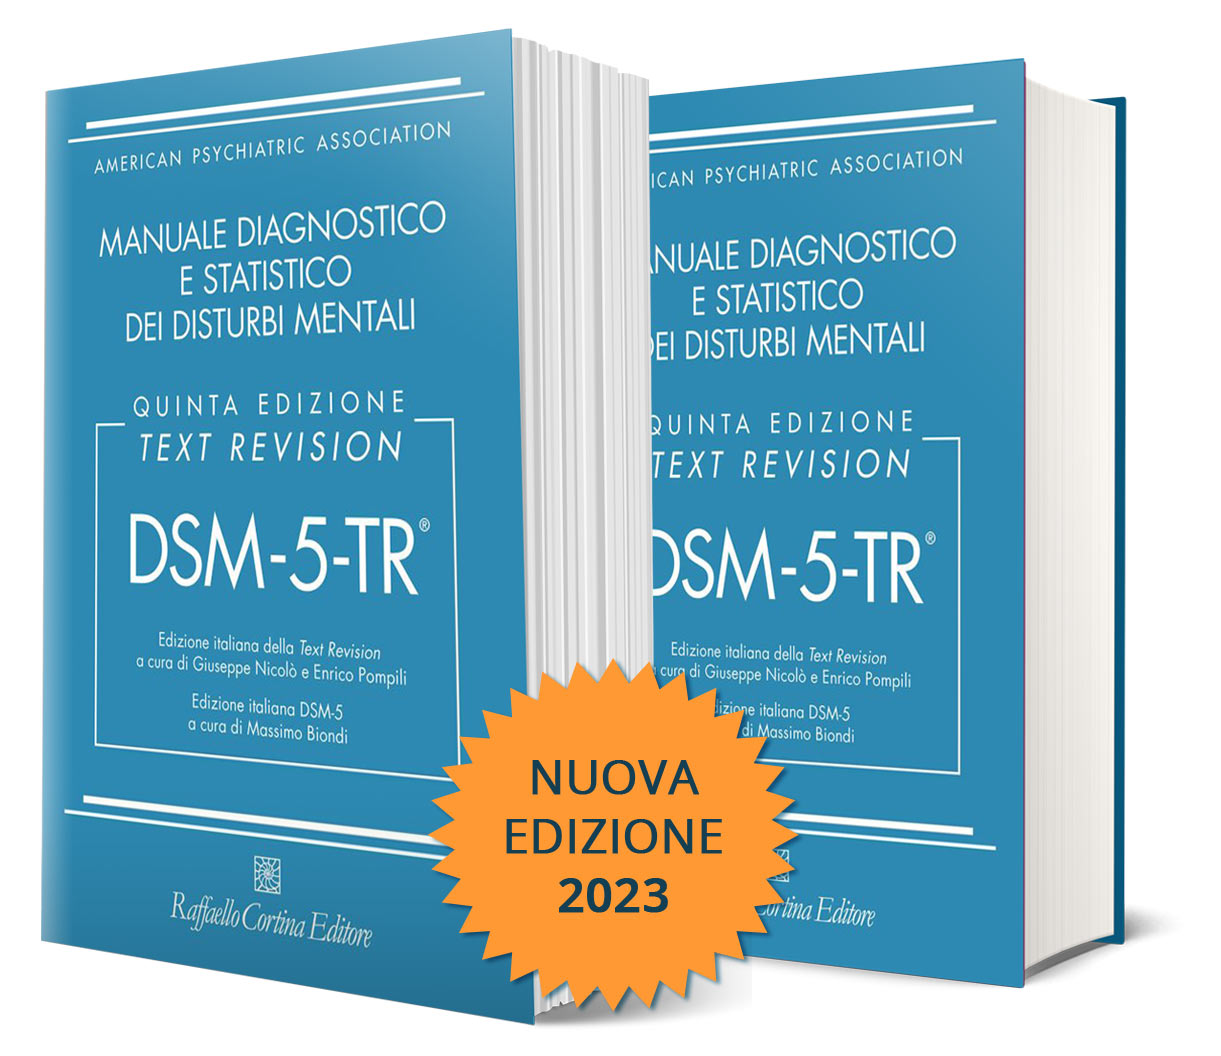 DSM-5® Collection - Tutti i libri della collana DSM-5 di Raffaello